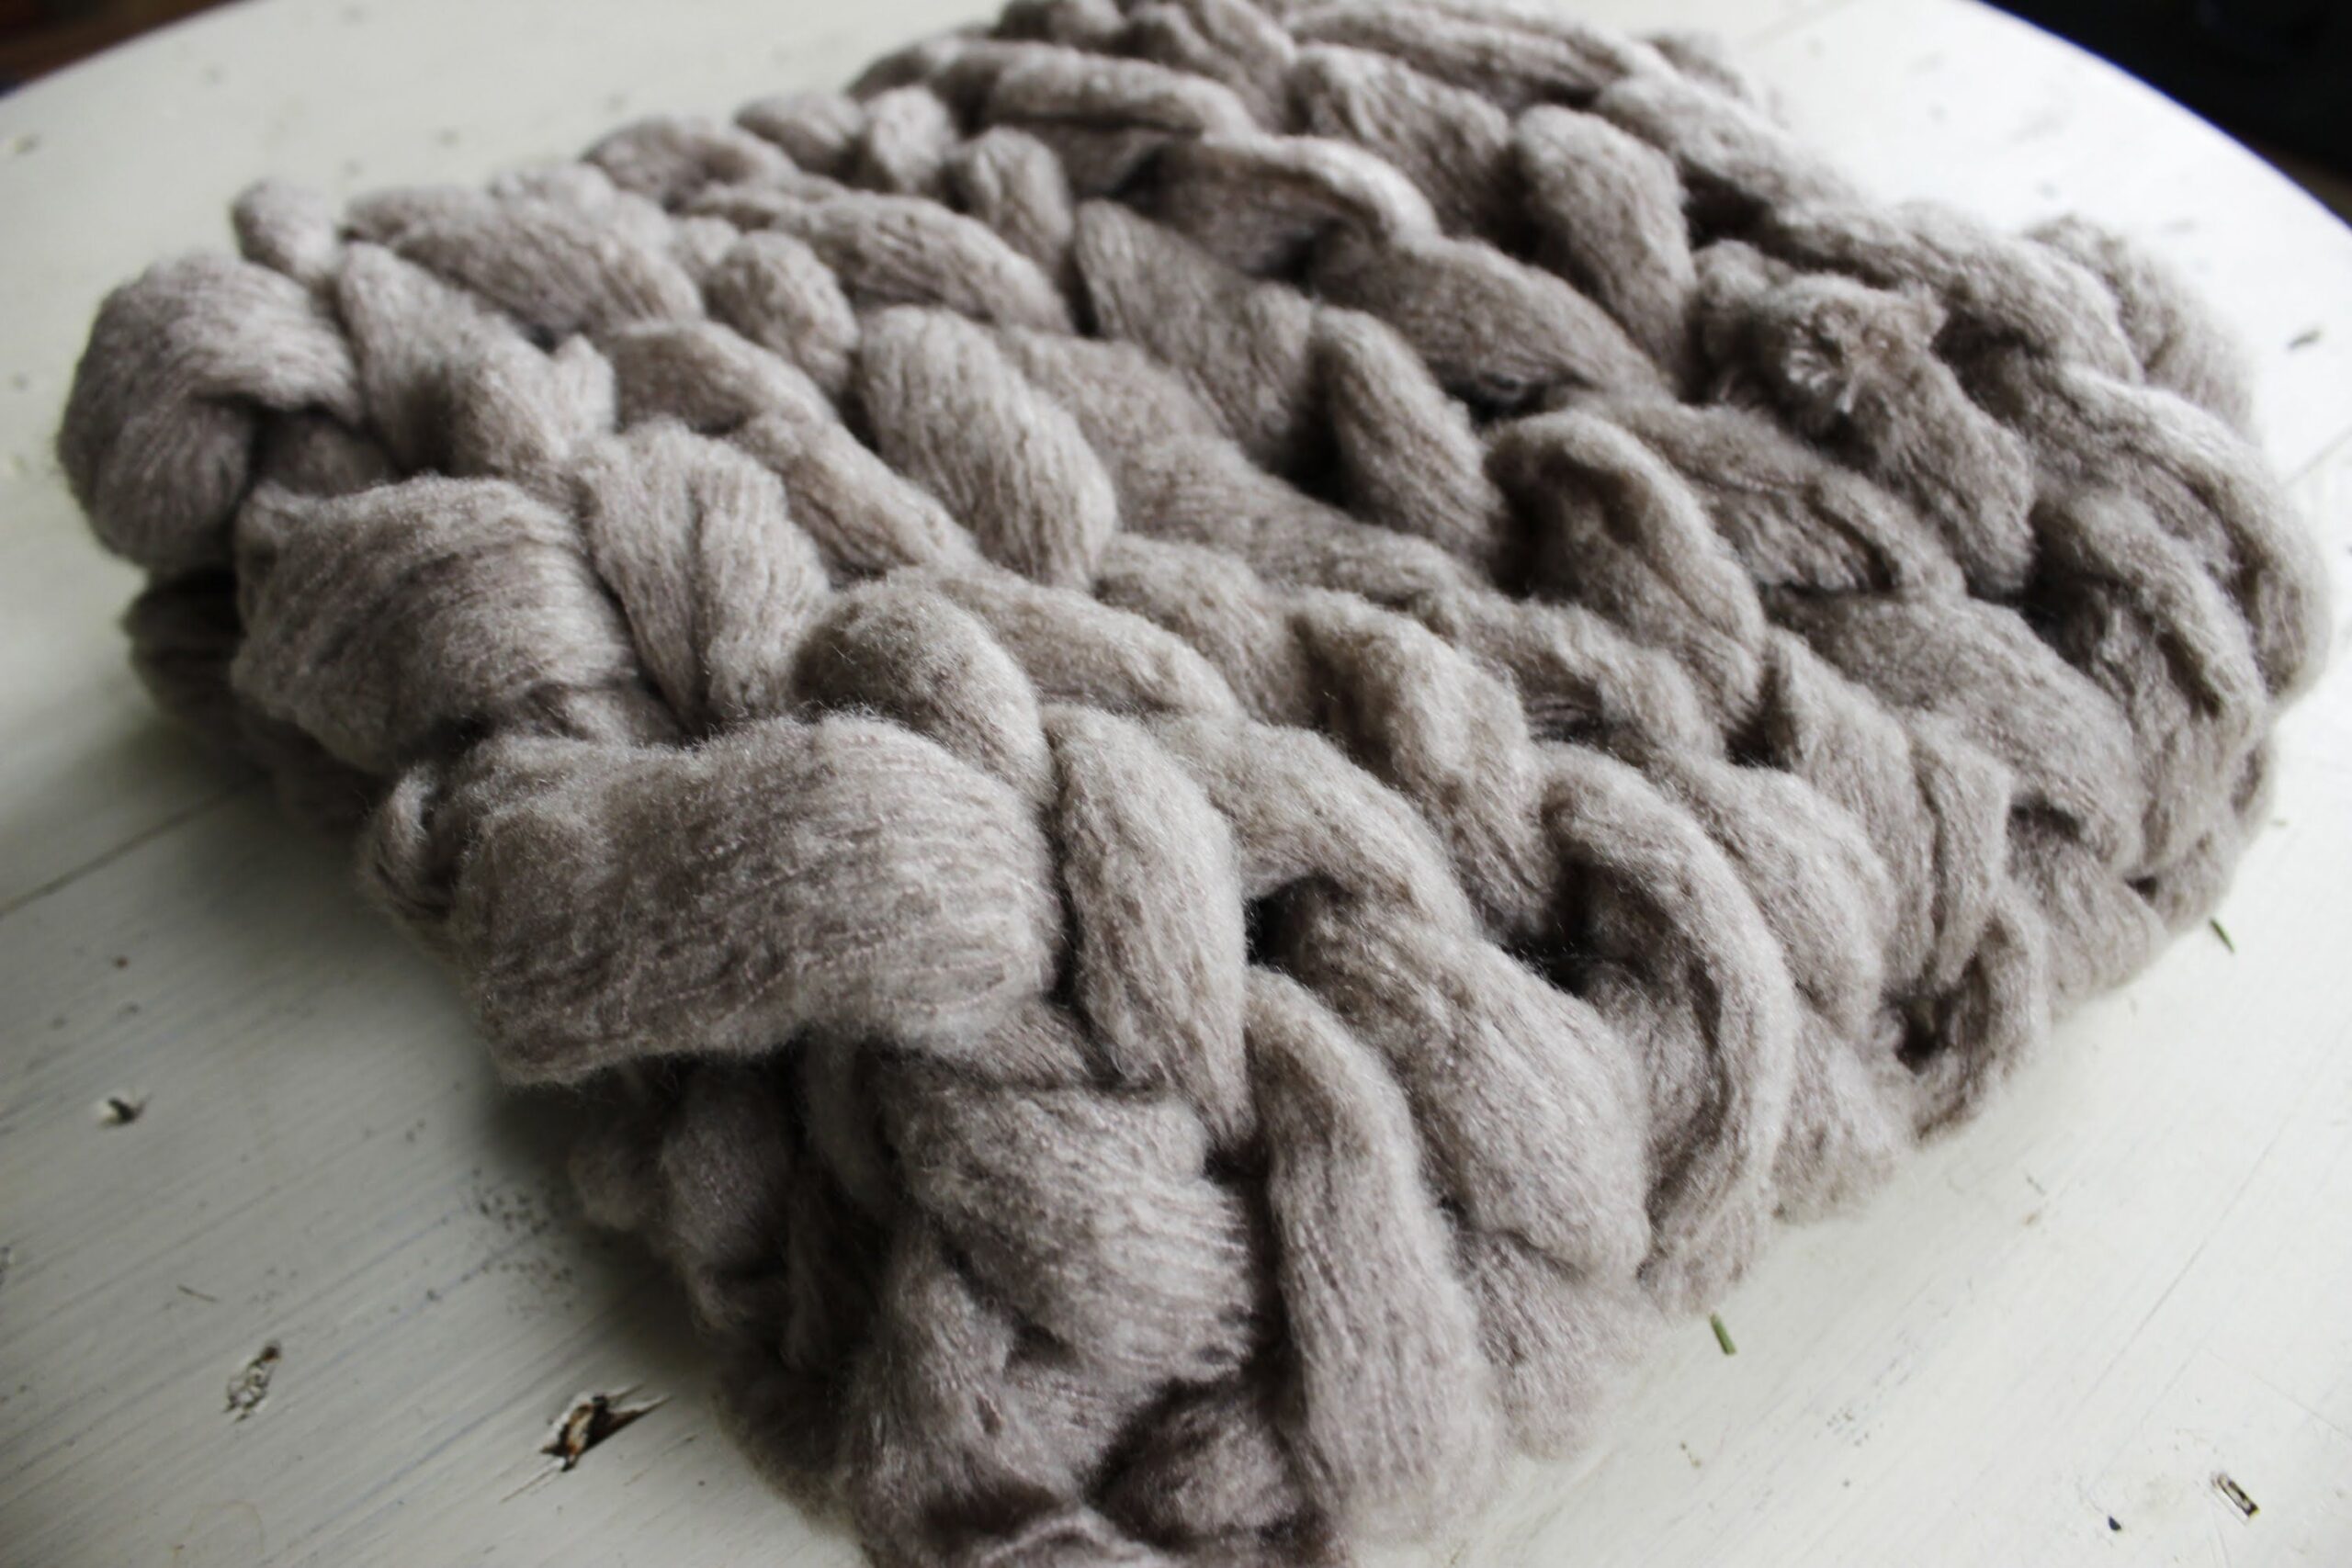 Se sferruzzi per 45 minuti puoi creare una coperta gigante fatta a maglia